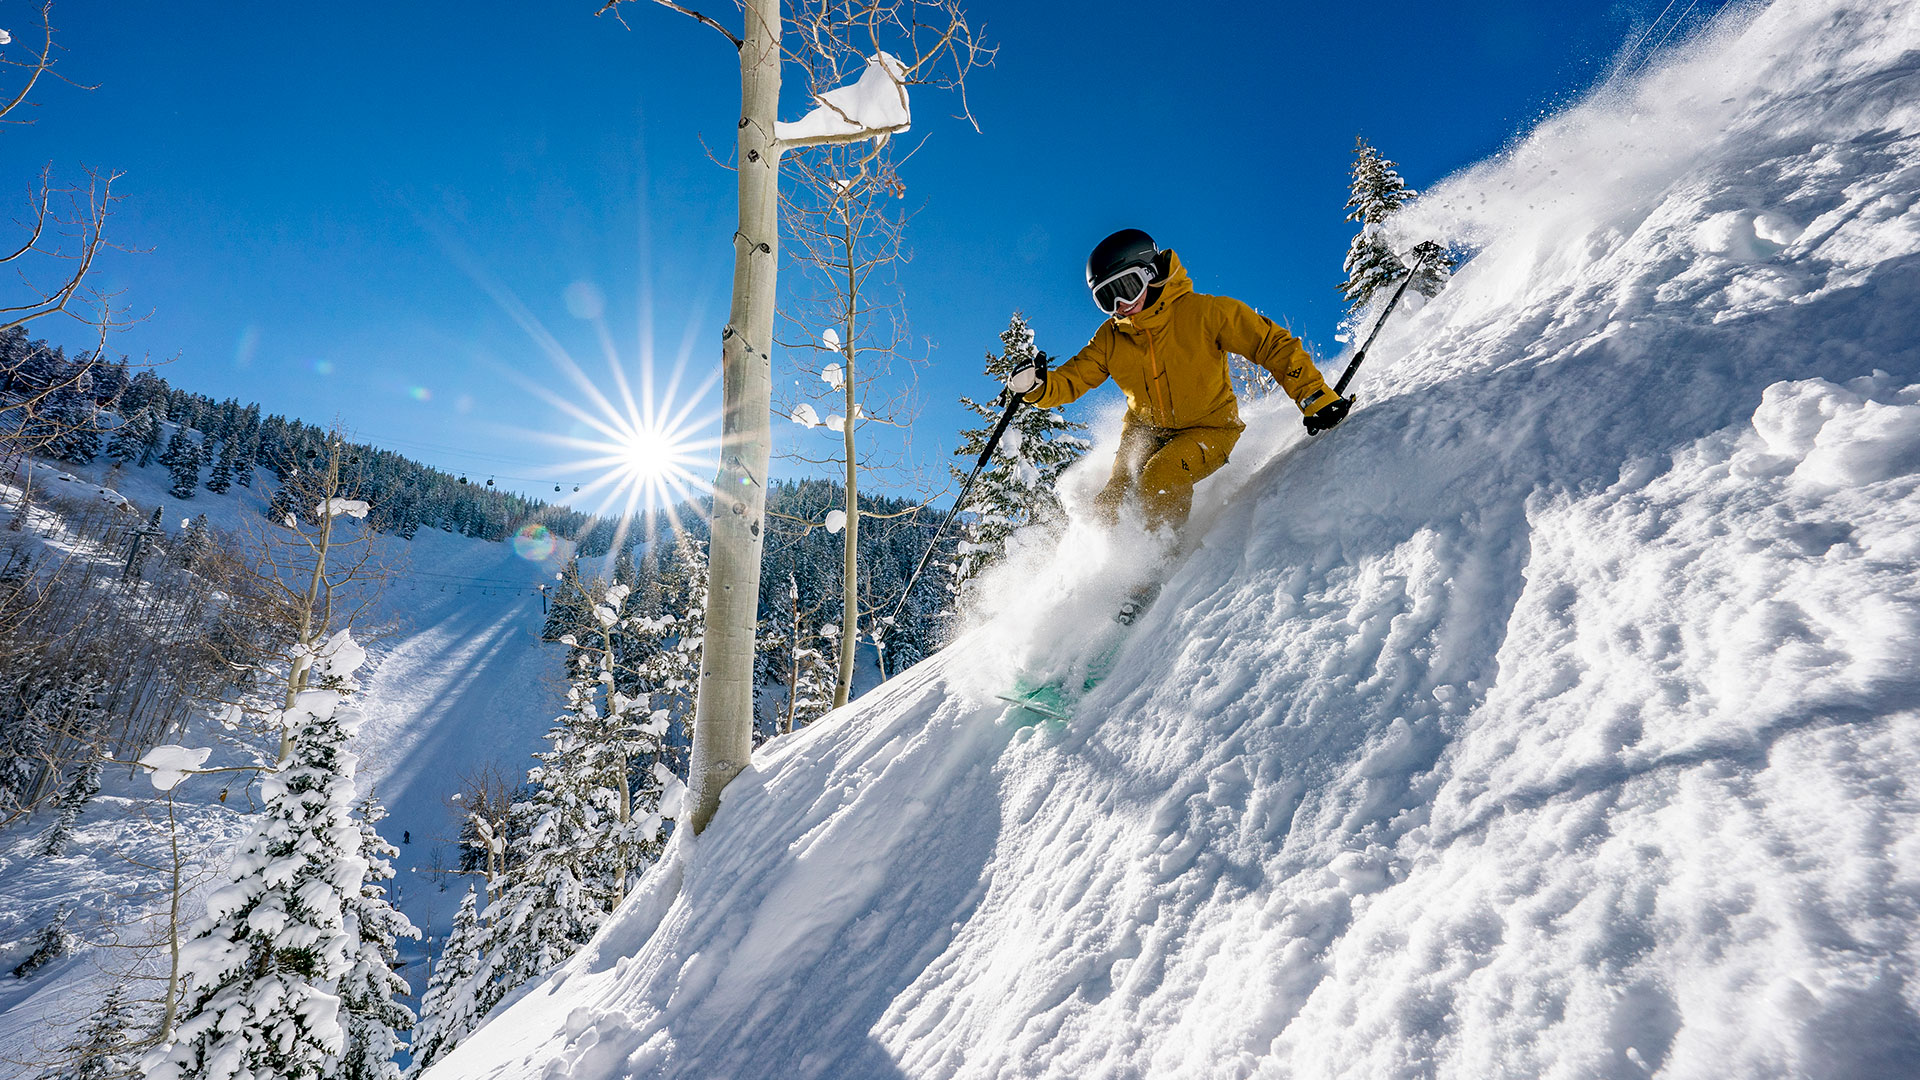 De las 4 montañas del complejo, la más adecuada para la practica de esquí por parte de expertos es Highlands (Matt Power)